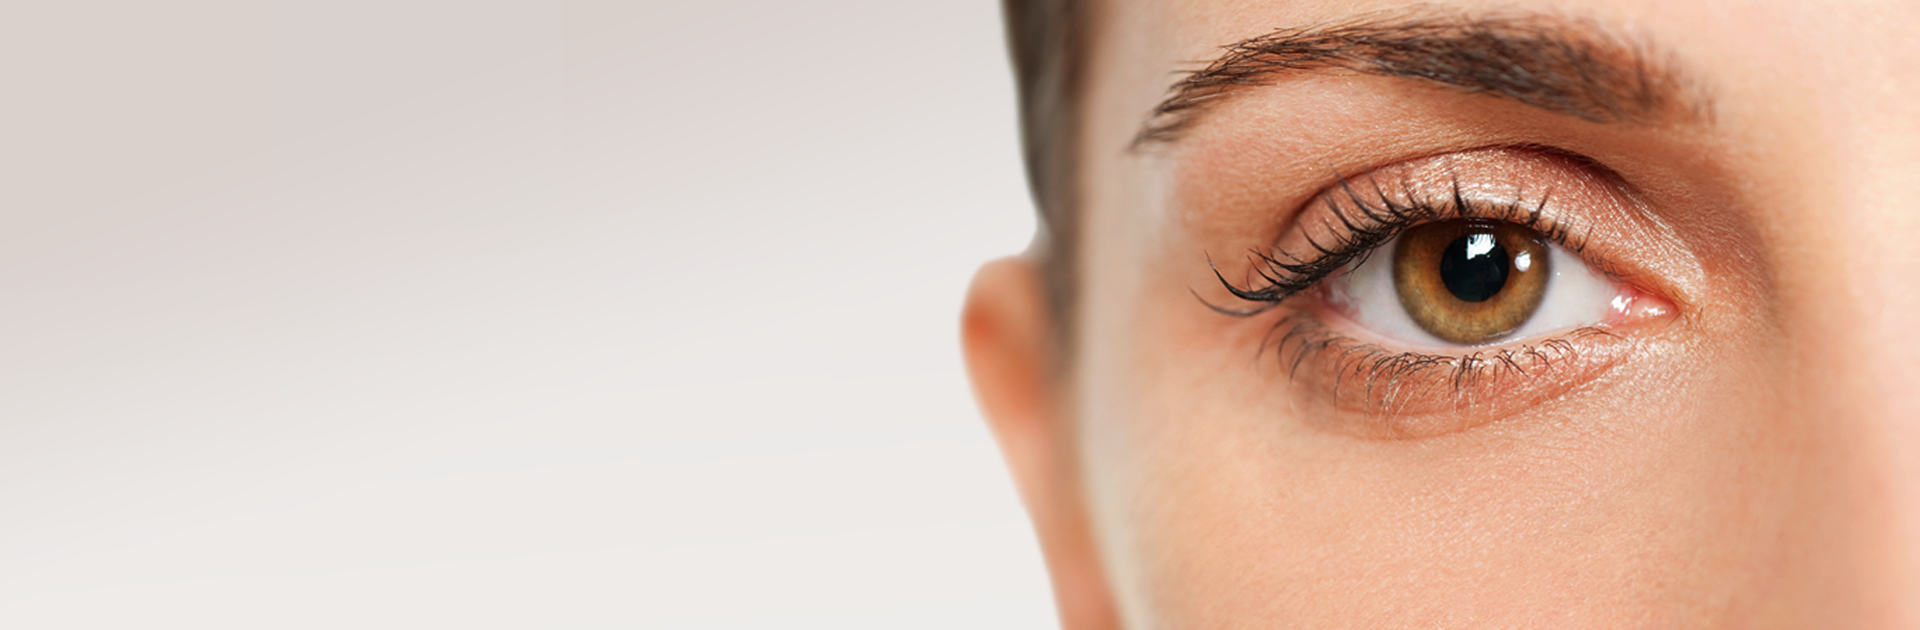 Plastická operace očních víček - blefaroplastika